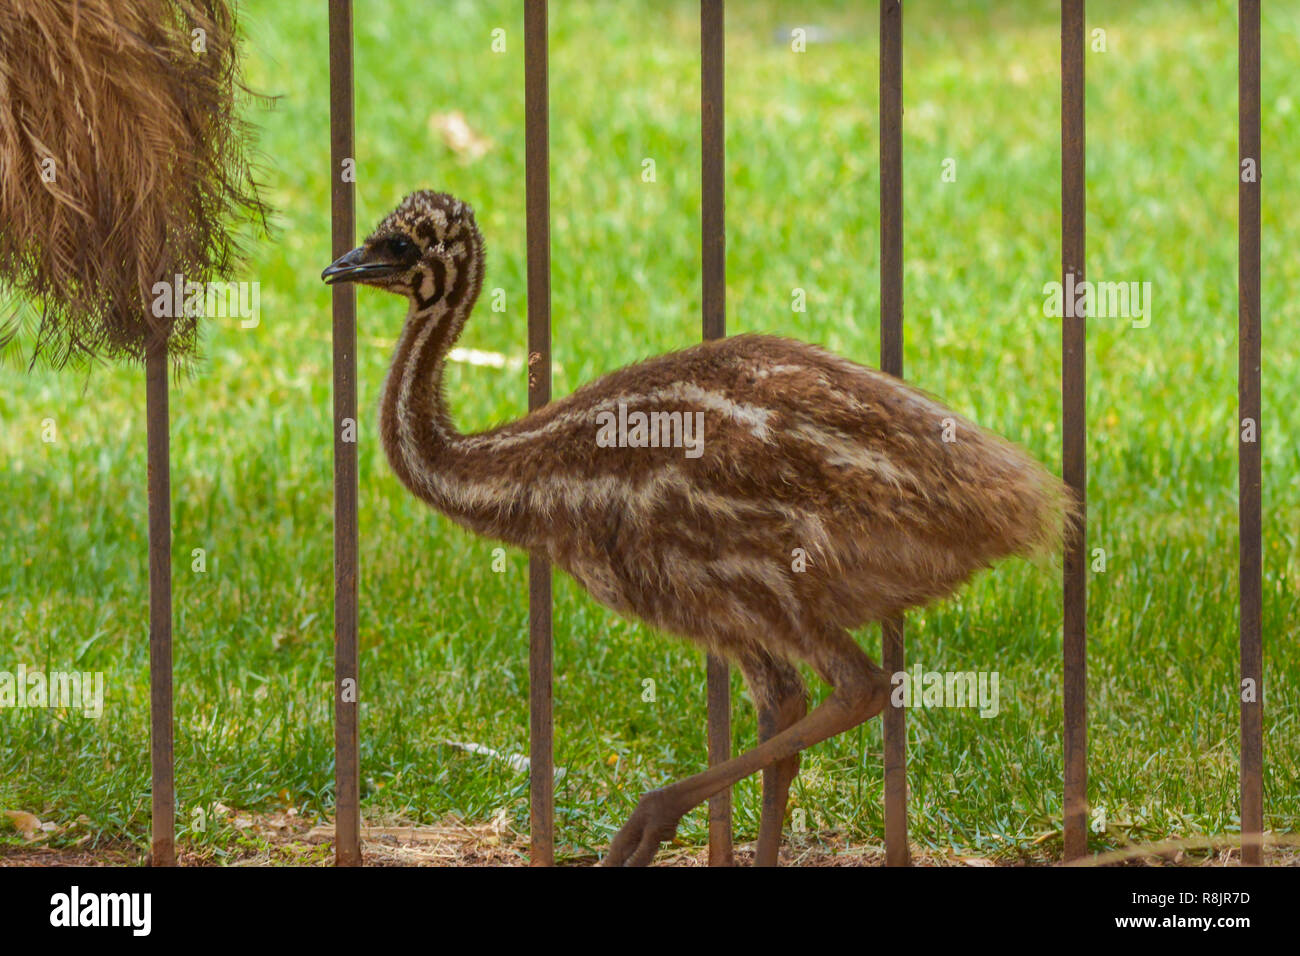 Emu juvenil close up shot Stock Photo